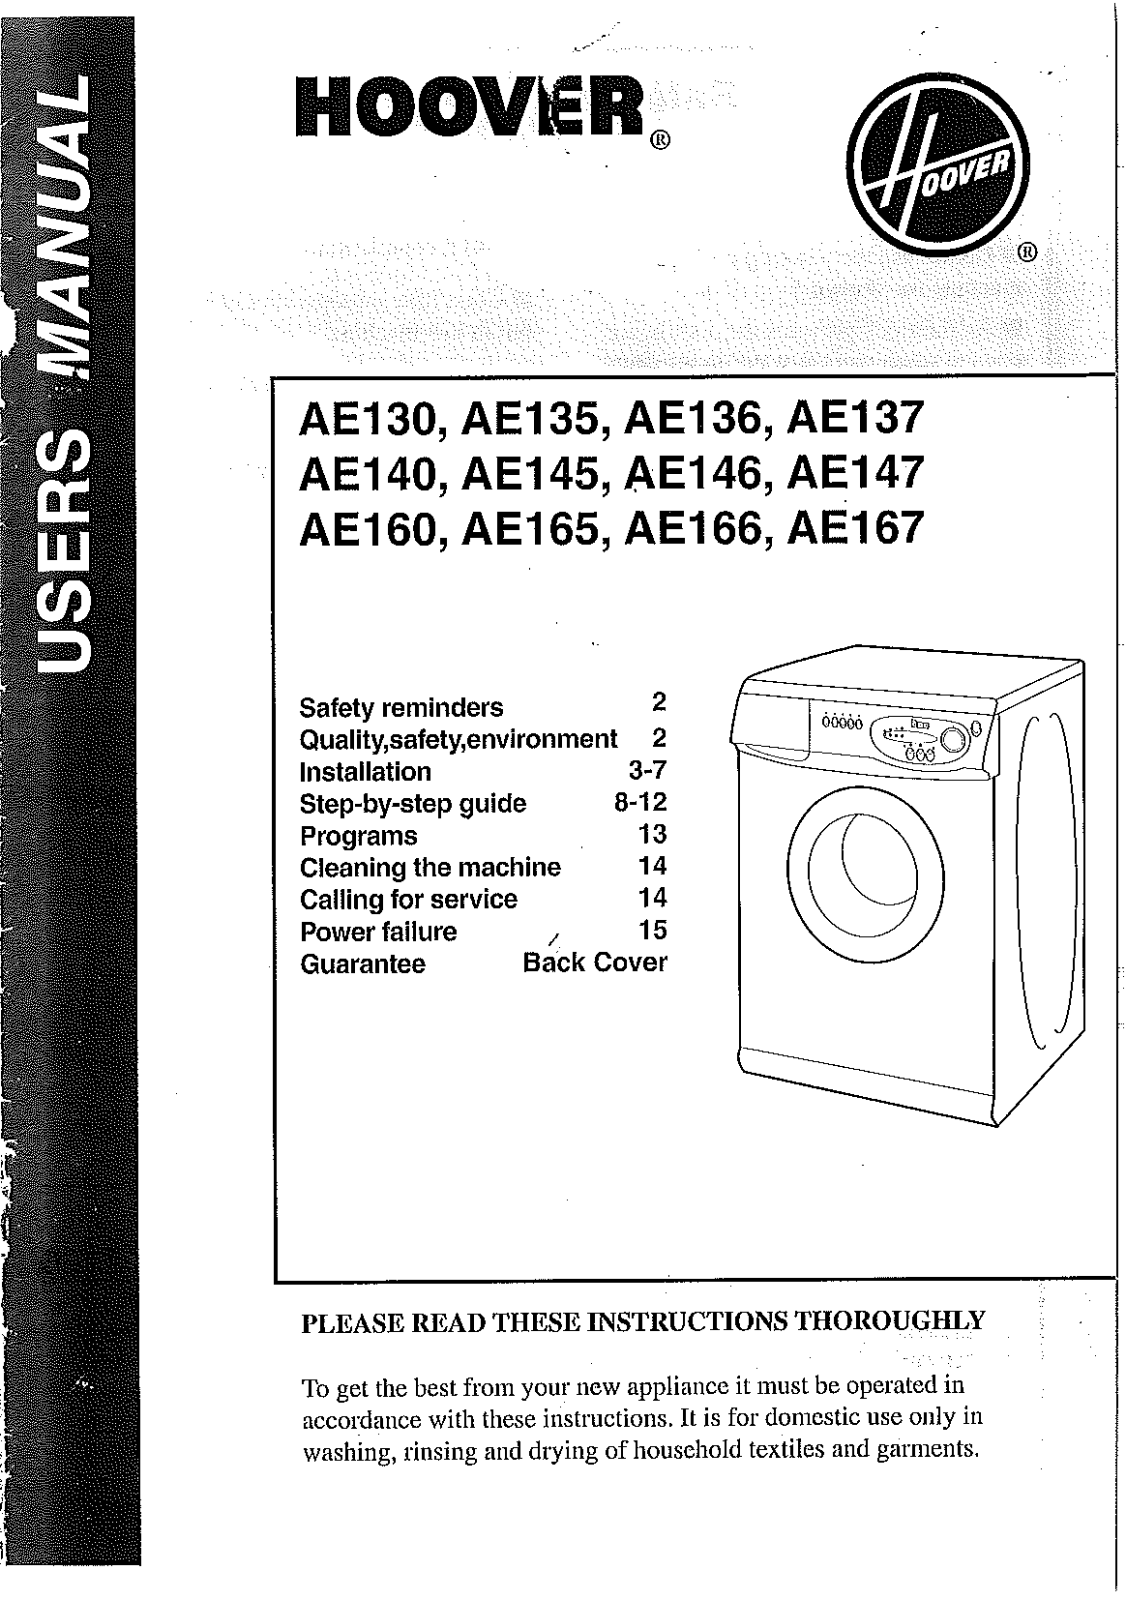 Hoover AE130, AE146, AE147, AE167, AE137 Manual